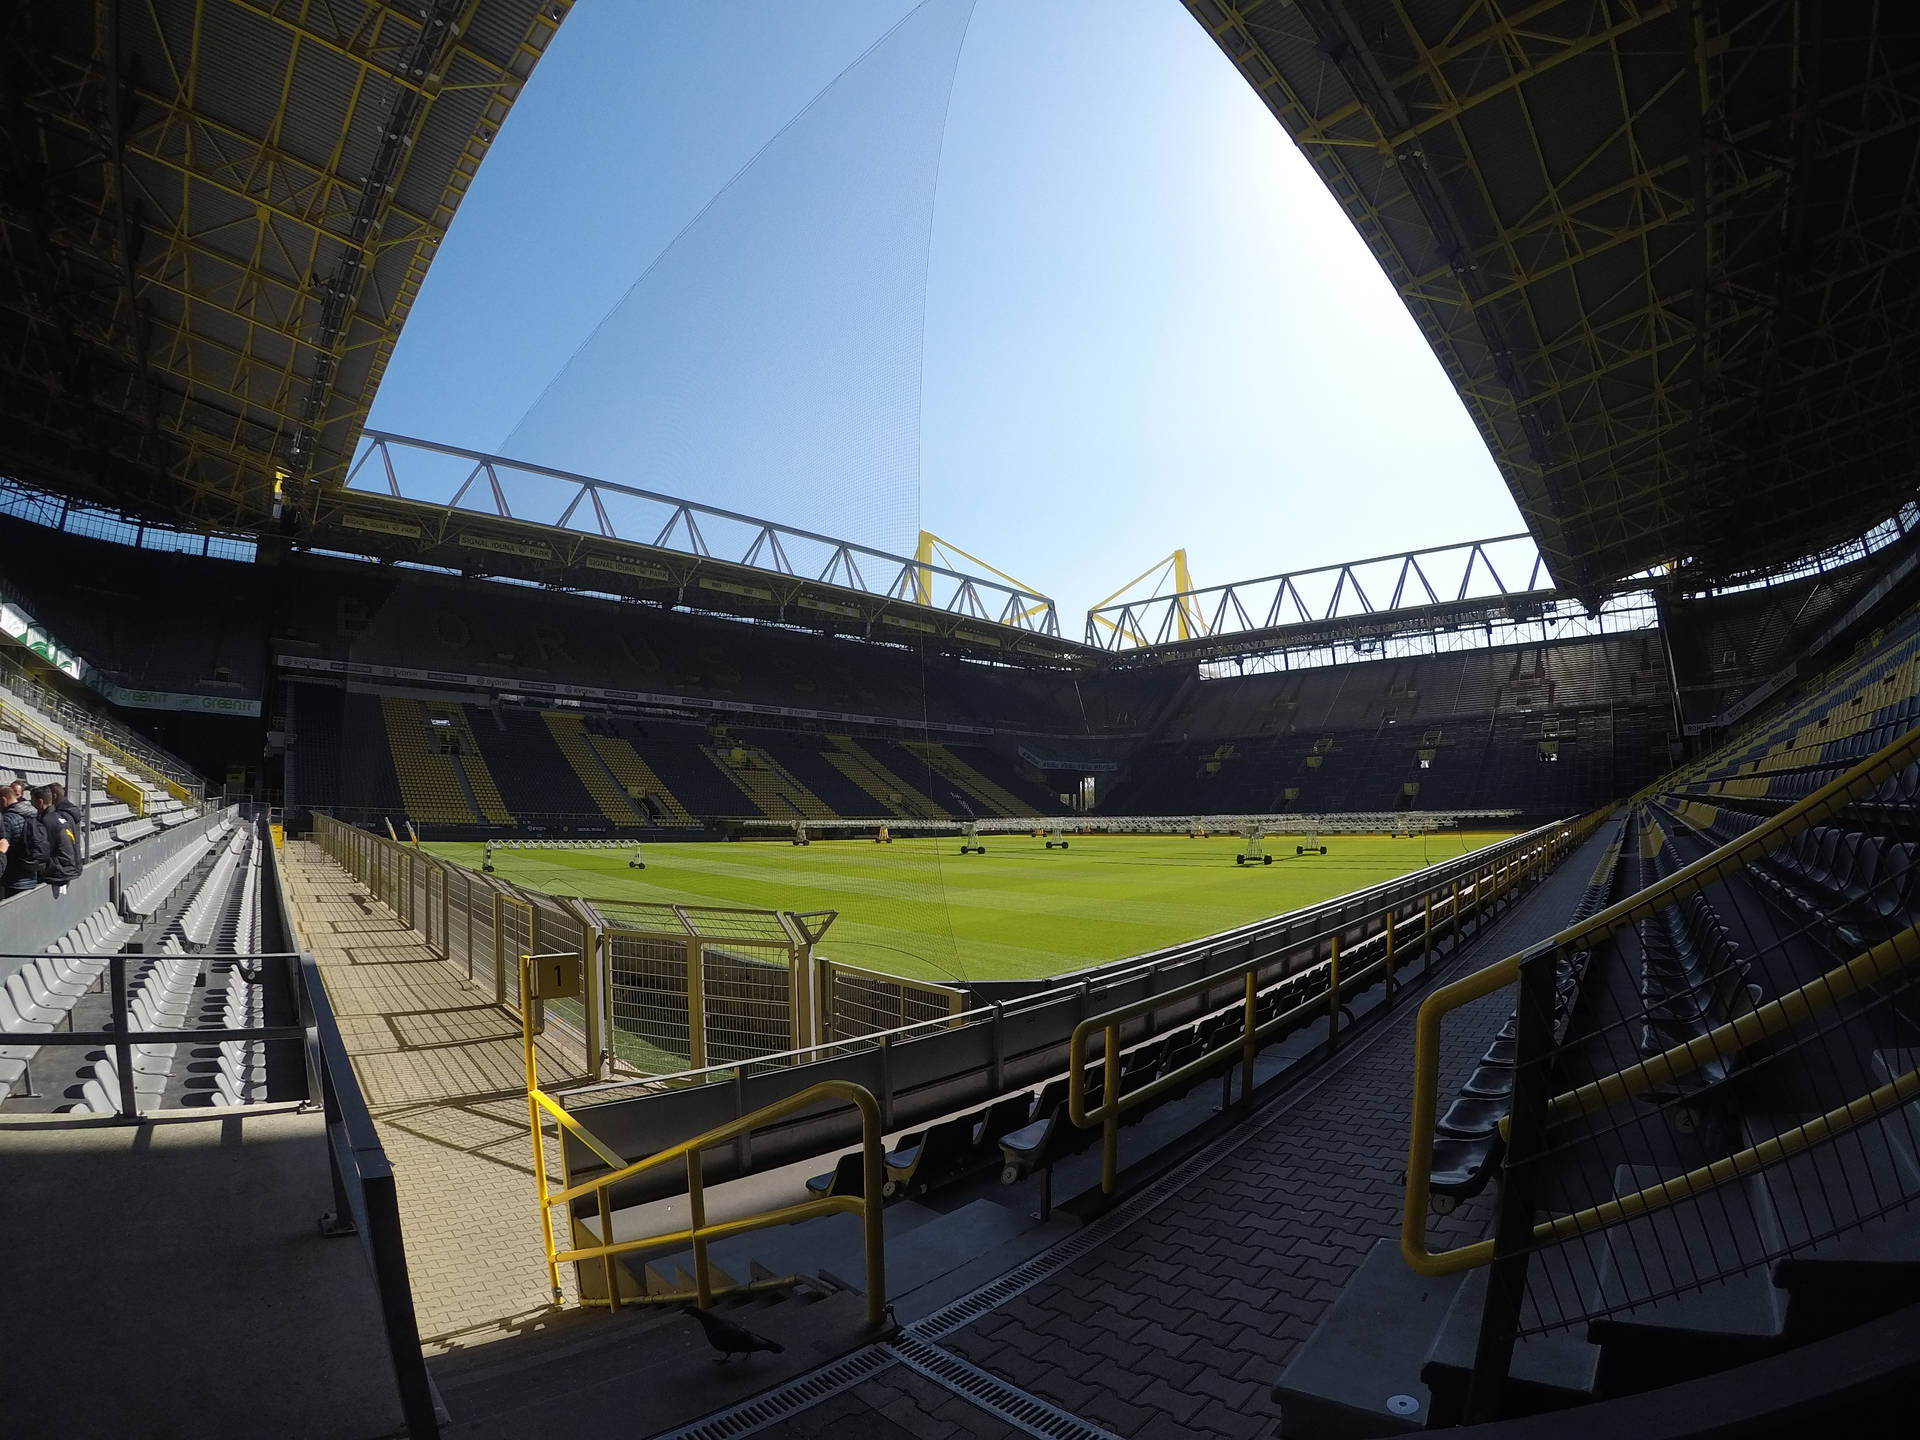 Borussia Dortmund Stadium Wideshot Wallpaper